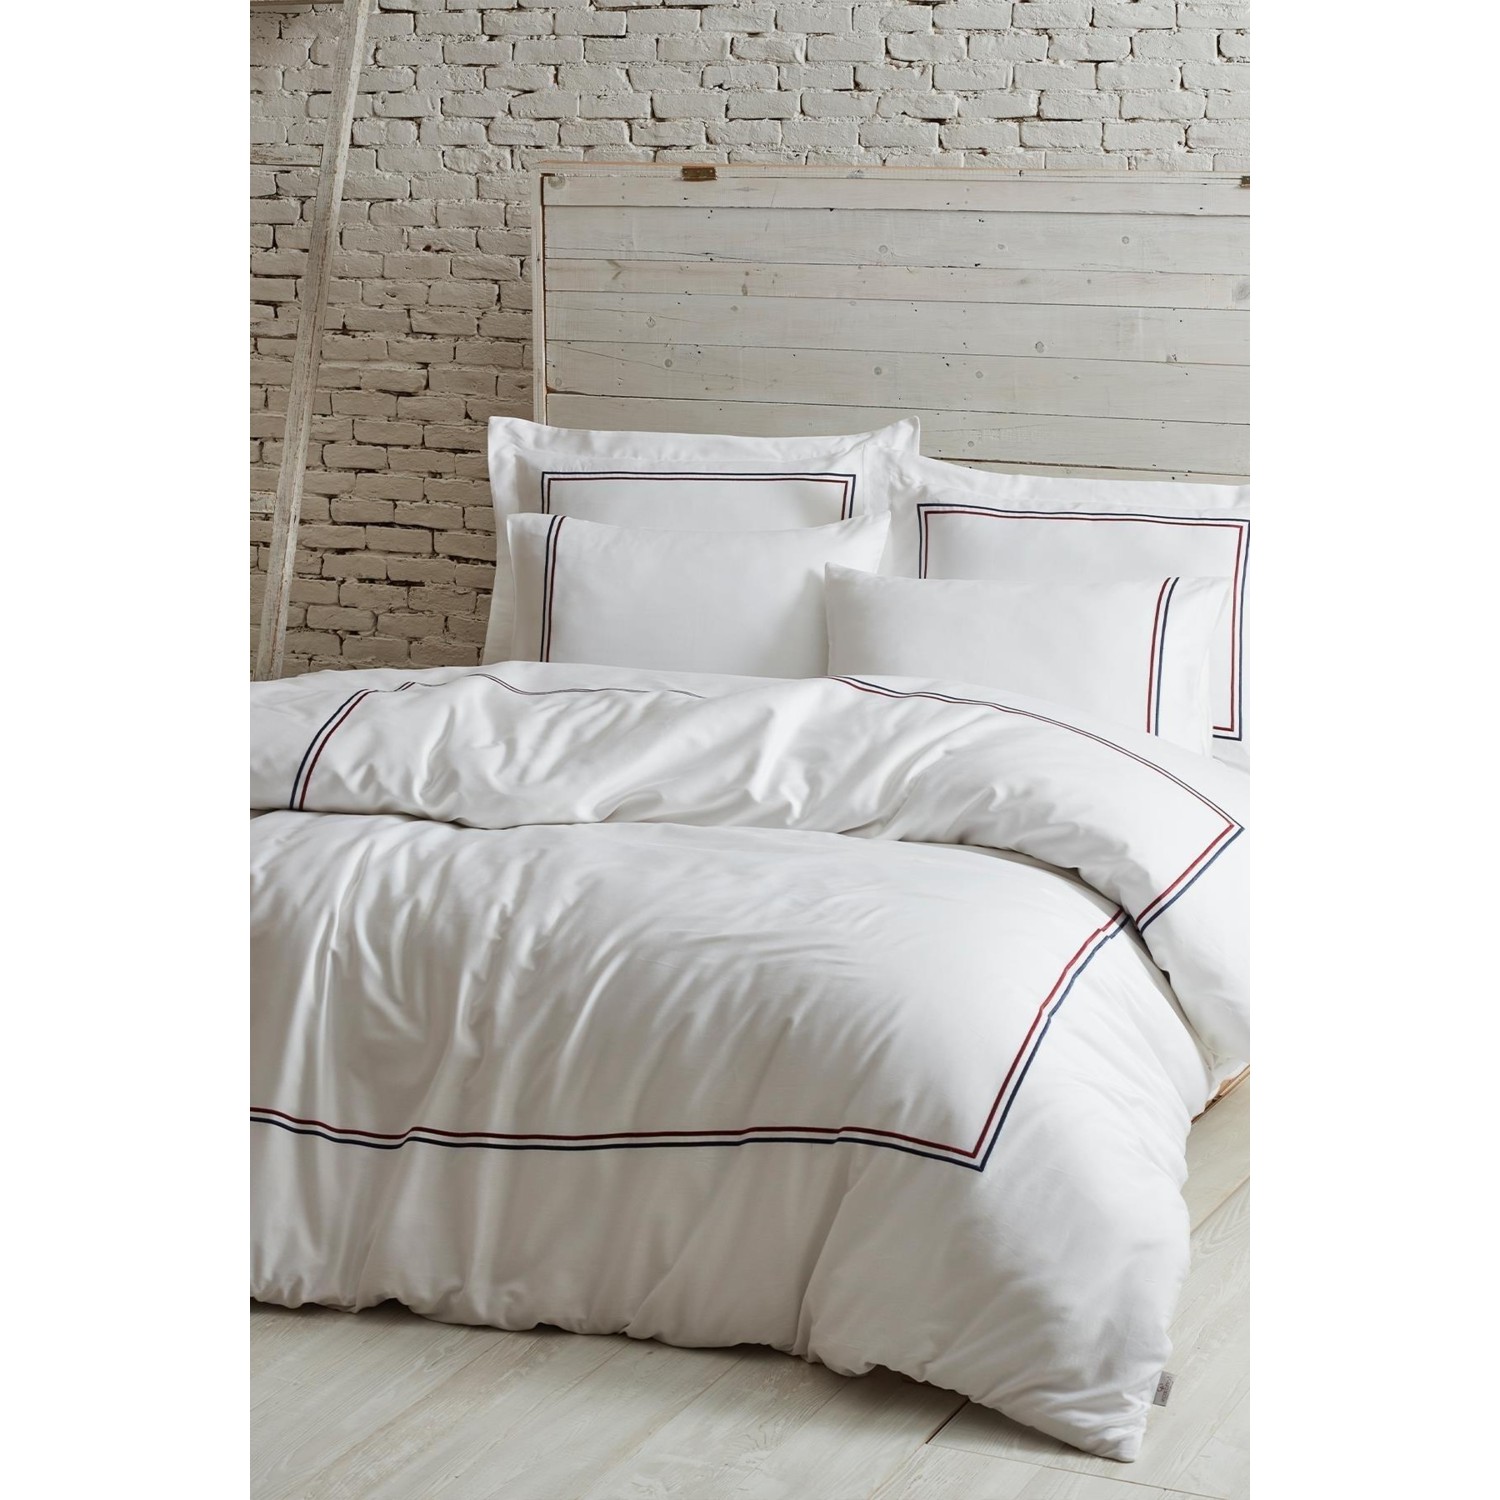 Ecocotton Line Комплект постельного белья королевского размера из 100% органического хлопка, атласа с вышивкой, белого цвета, 220X240 см beyaz saray hotel